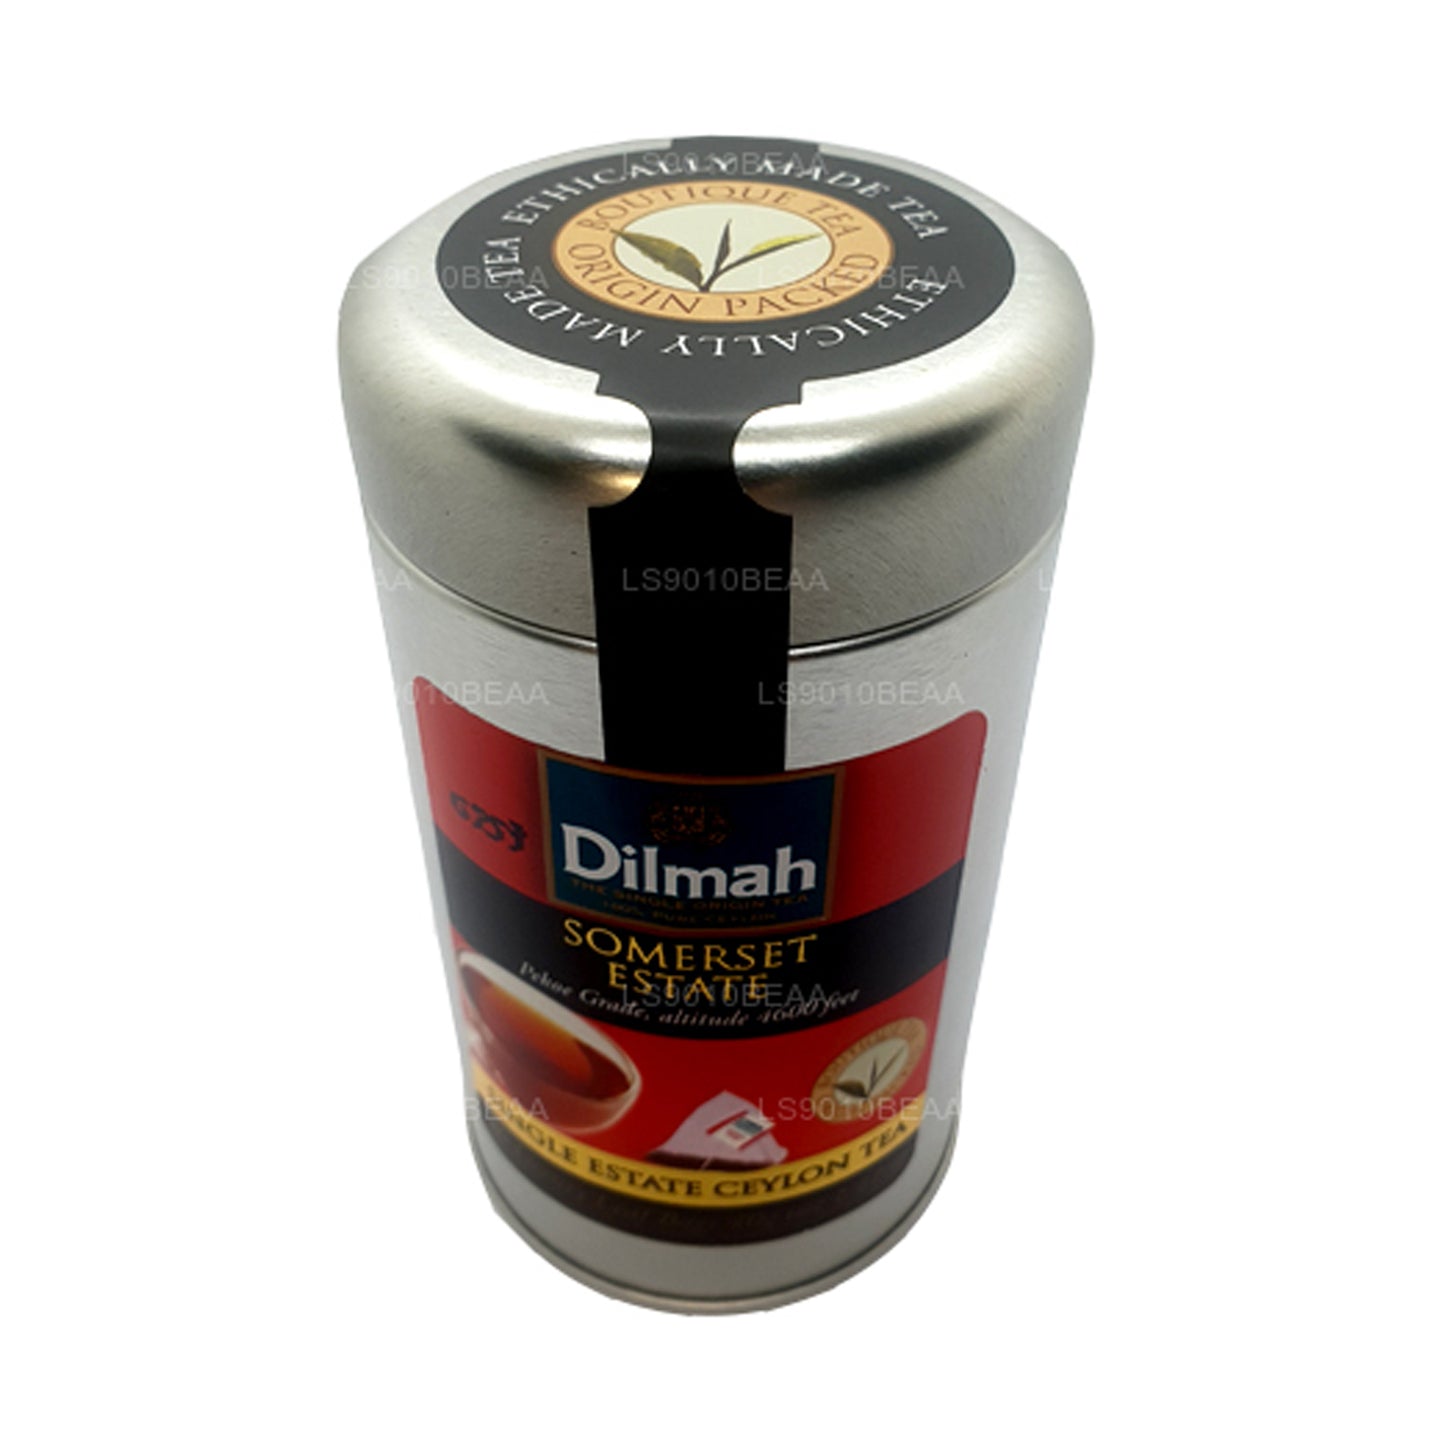 Dilmah Somerset Tek Kişilik Çay Caddy (40g)